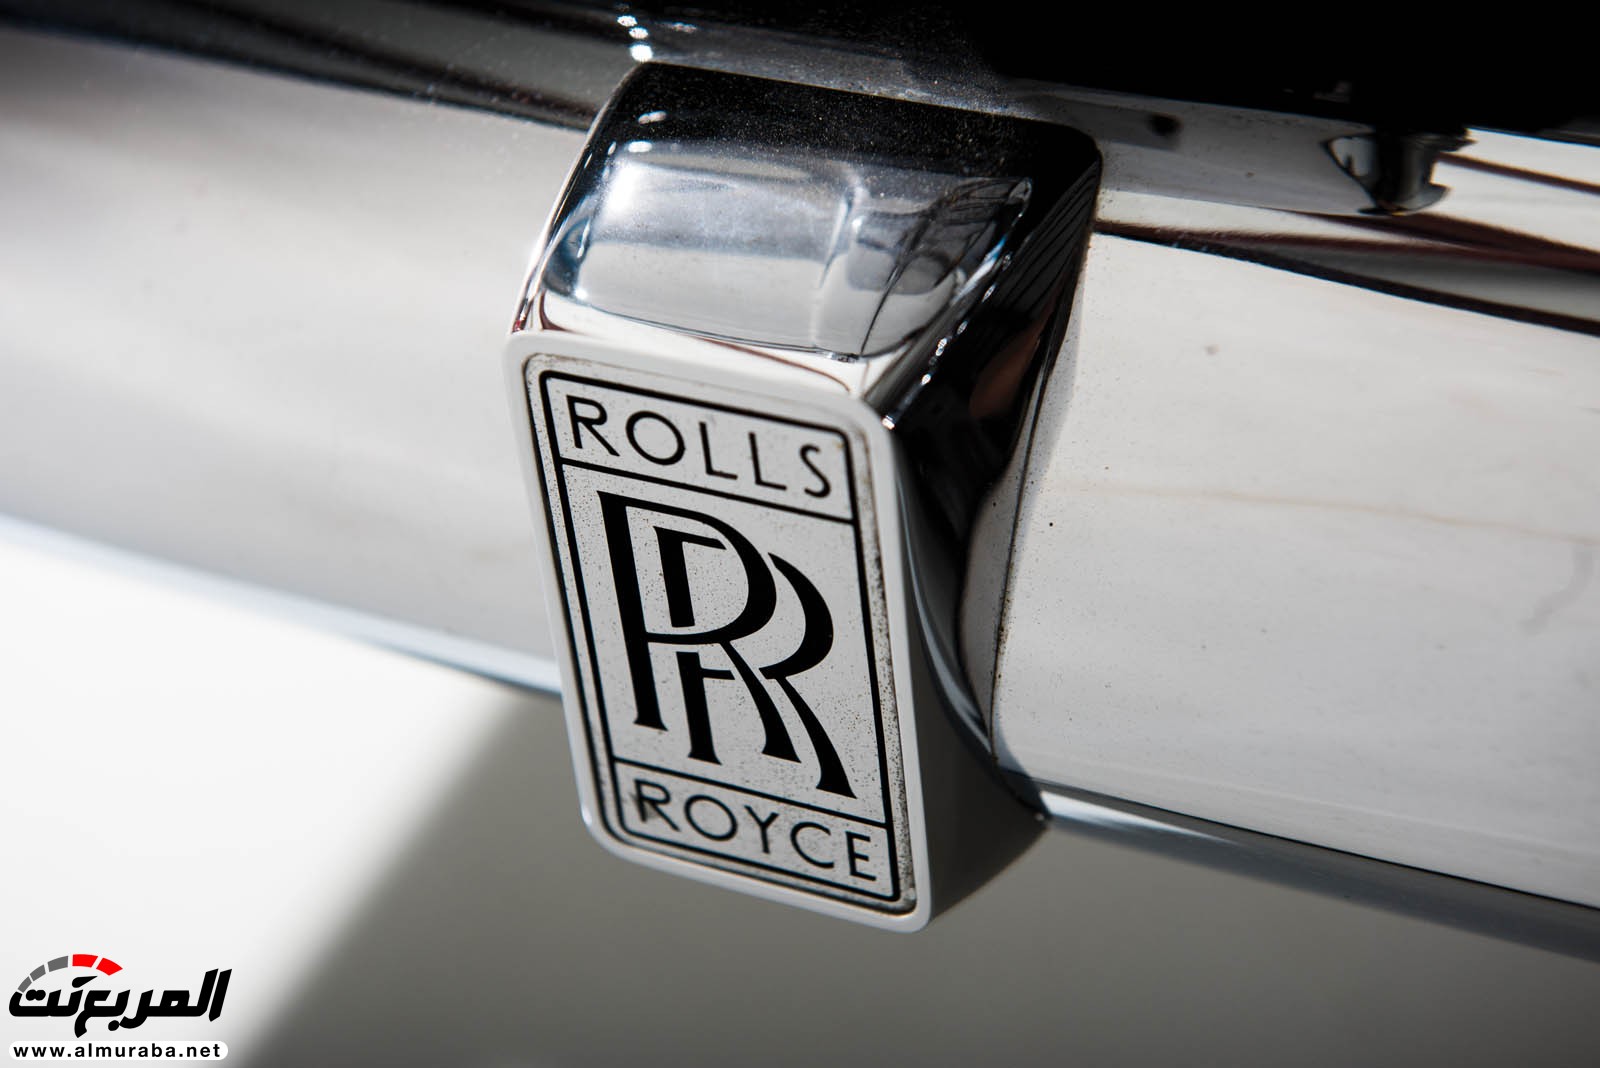 "رولز رويس" سيلفر كلاود 1959 ذات هيكلة الواجن تتوجه لتباع في مزاد عالمي Rolls-Royce Silver Cloud 71